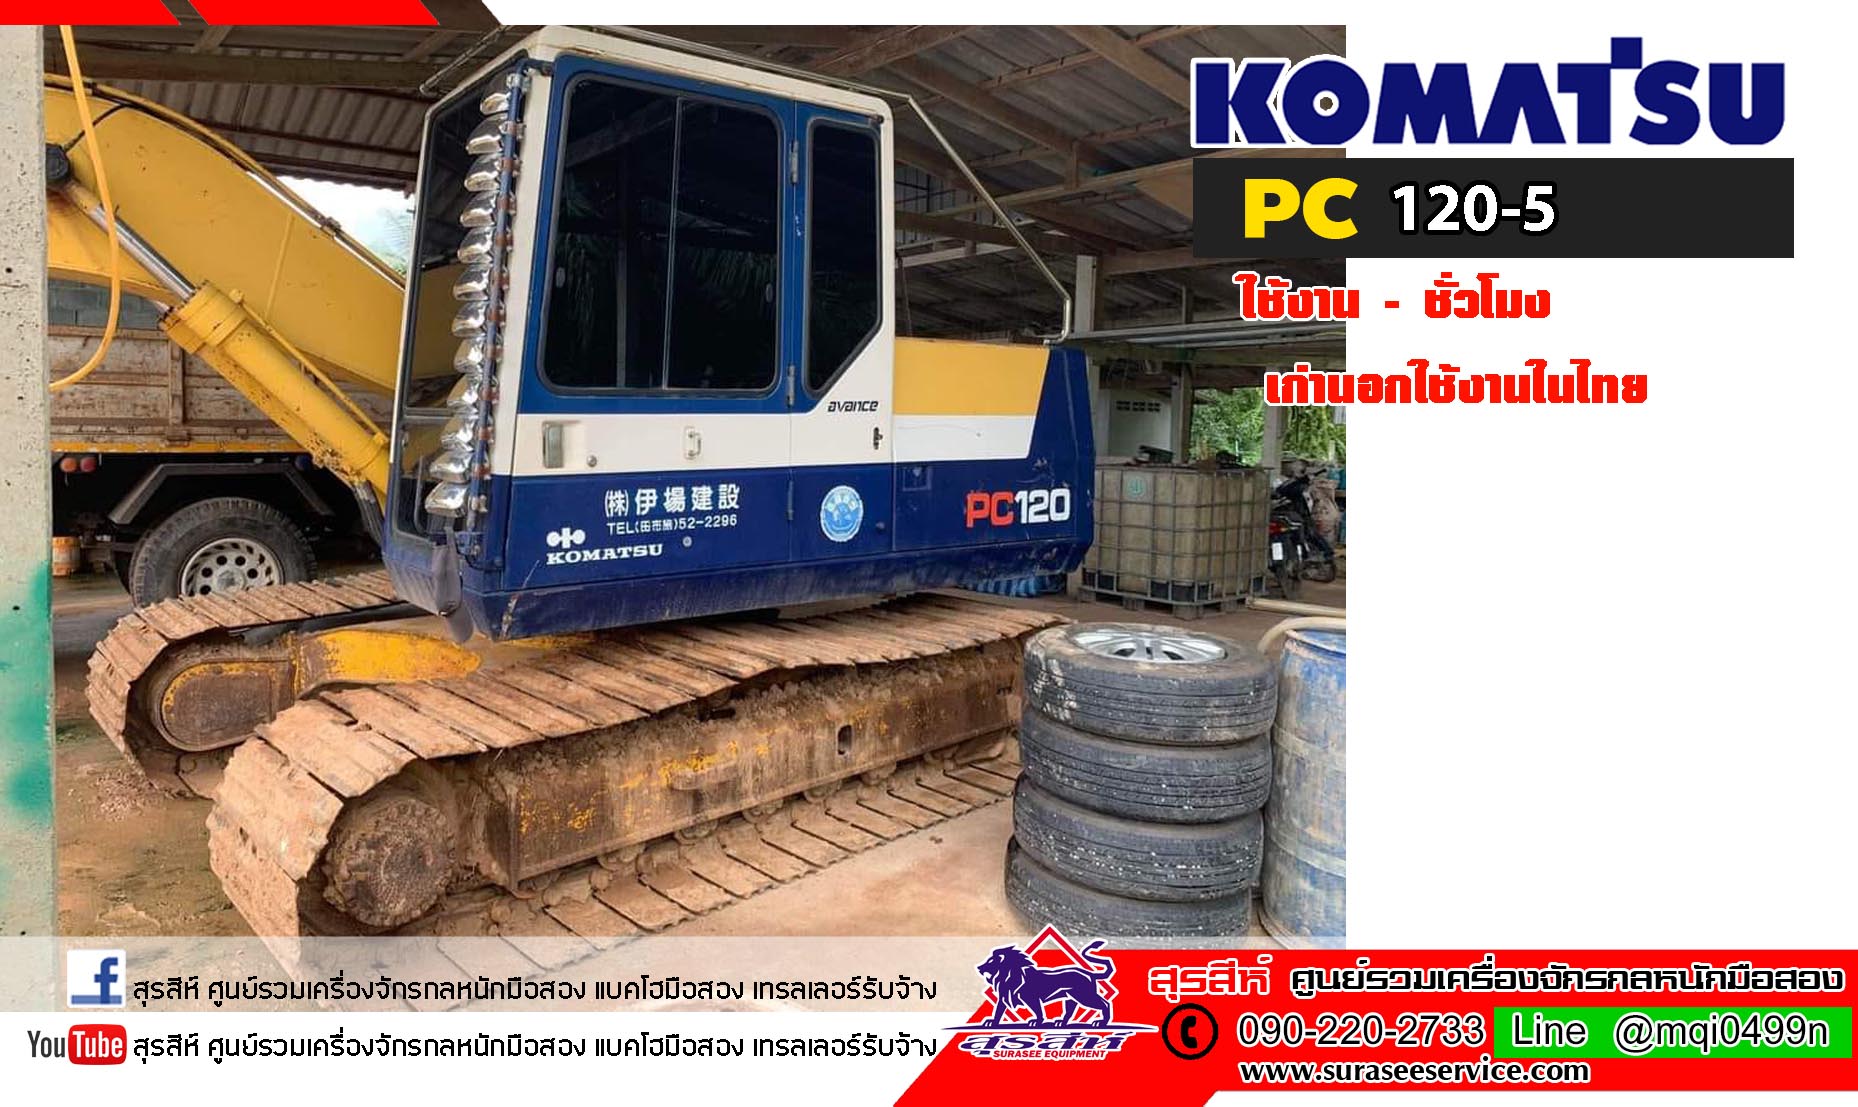 แบคโฮมือสอง KOMATSU PC120-5 เก่านอกใช้งานในไทย รถอยู่ภาคใต้